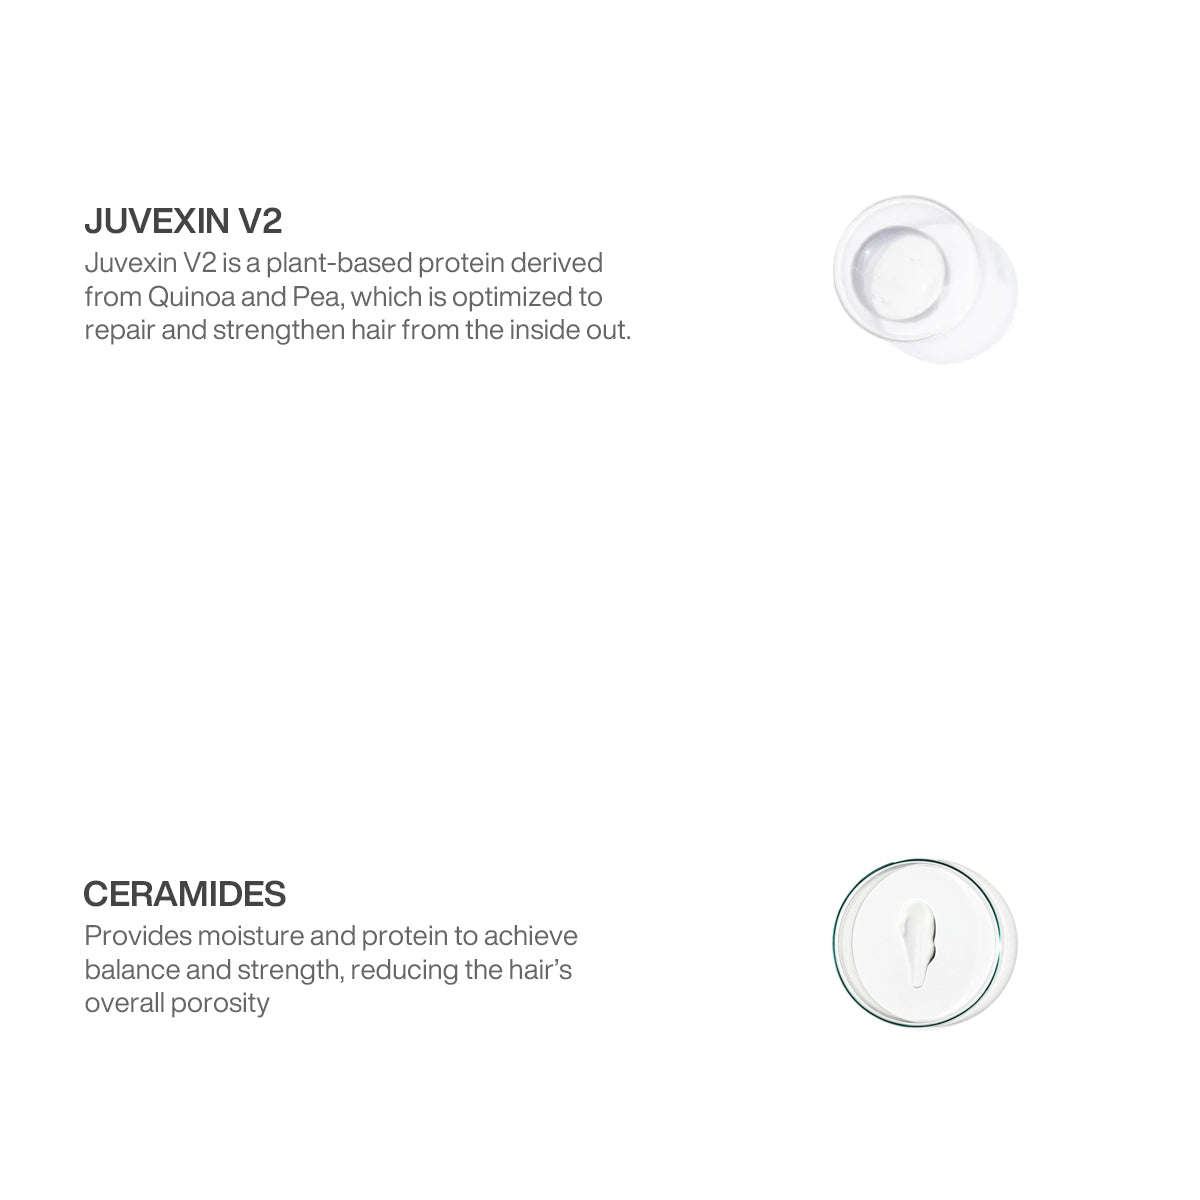 Juvexin Crema Color Pro